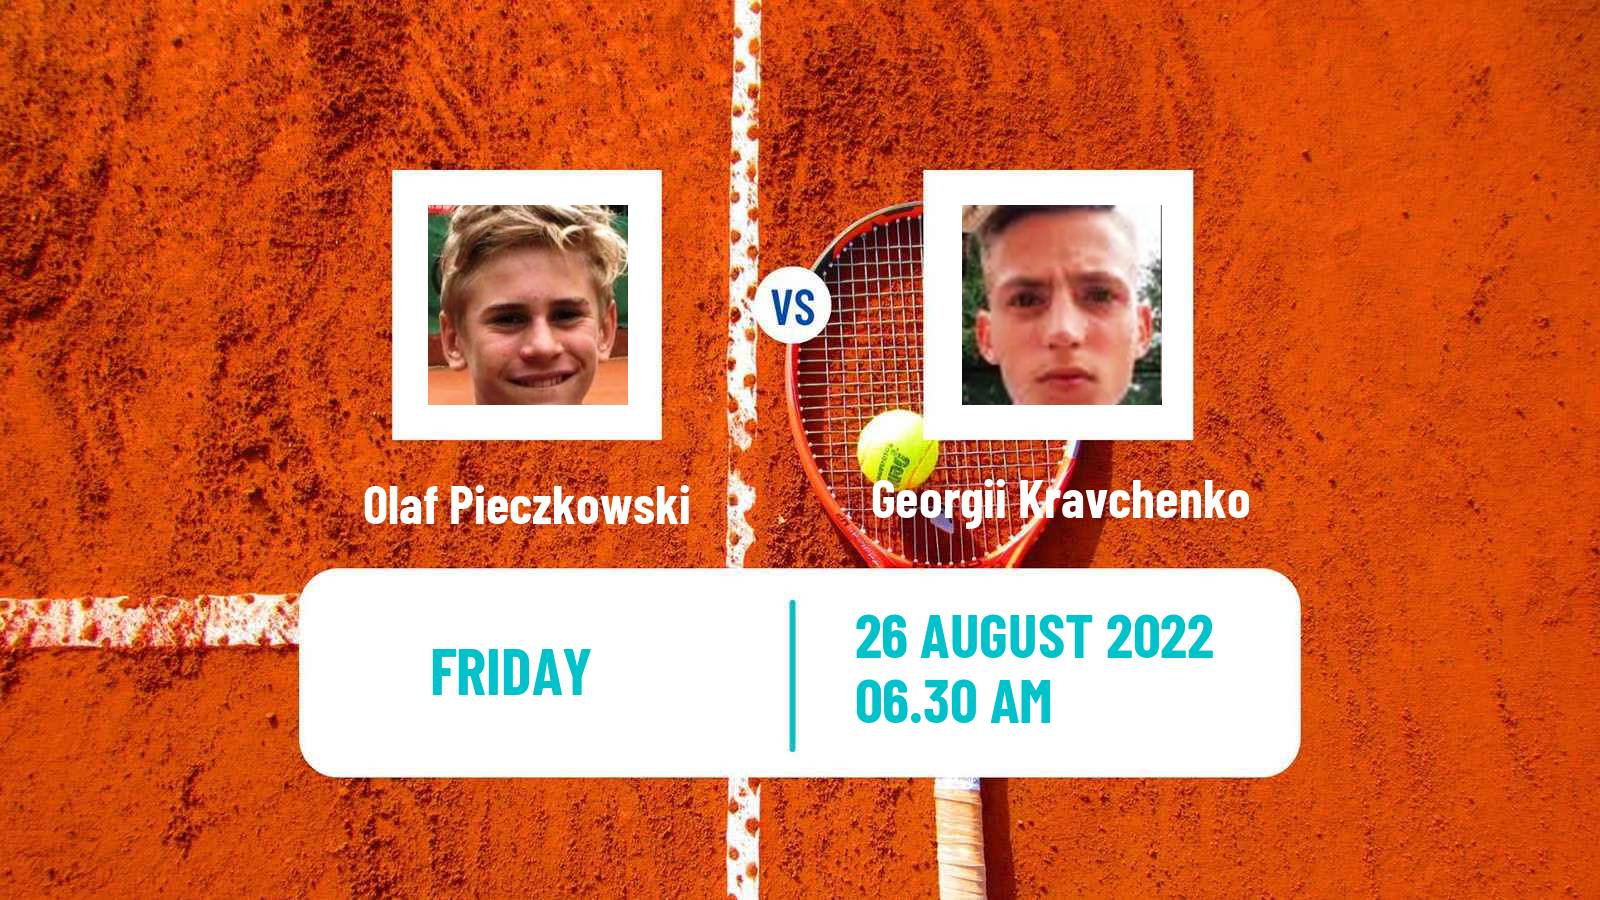 Tennis ITF Tournaments Olaf Pieczkowski - Georgii Kravchenko